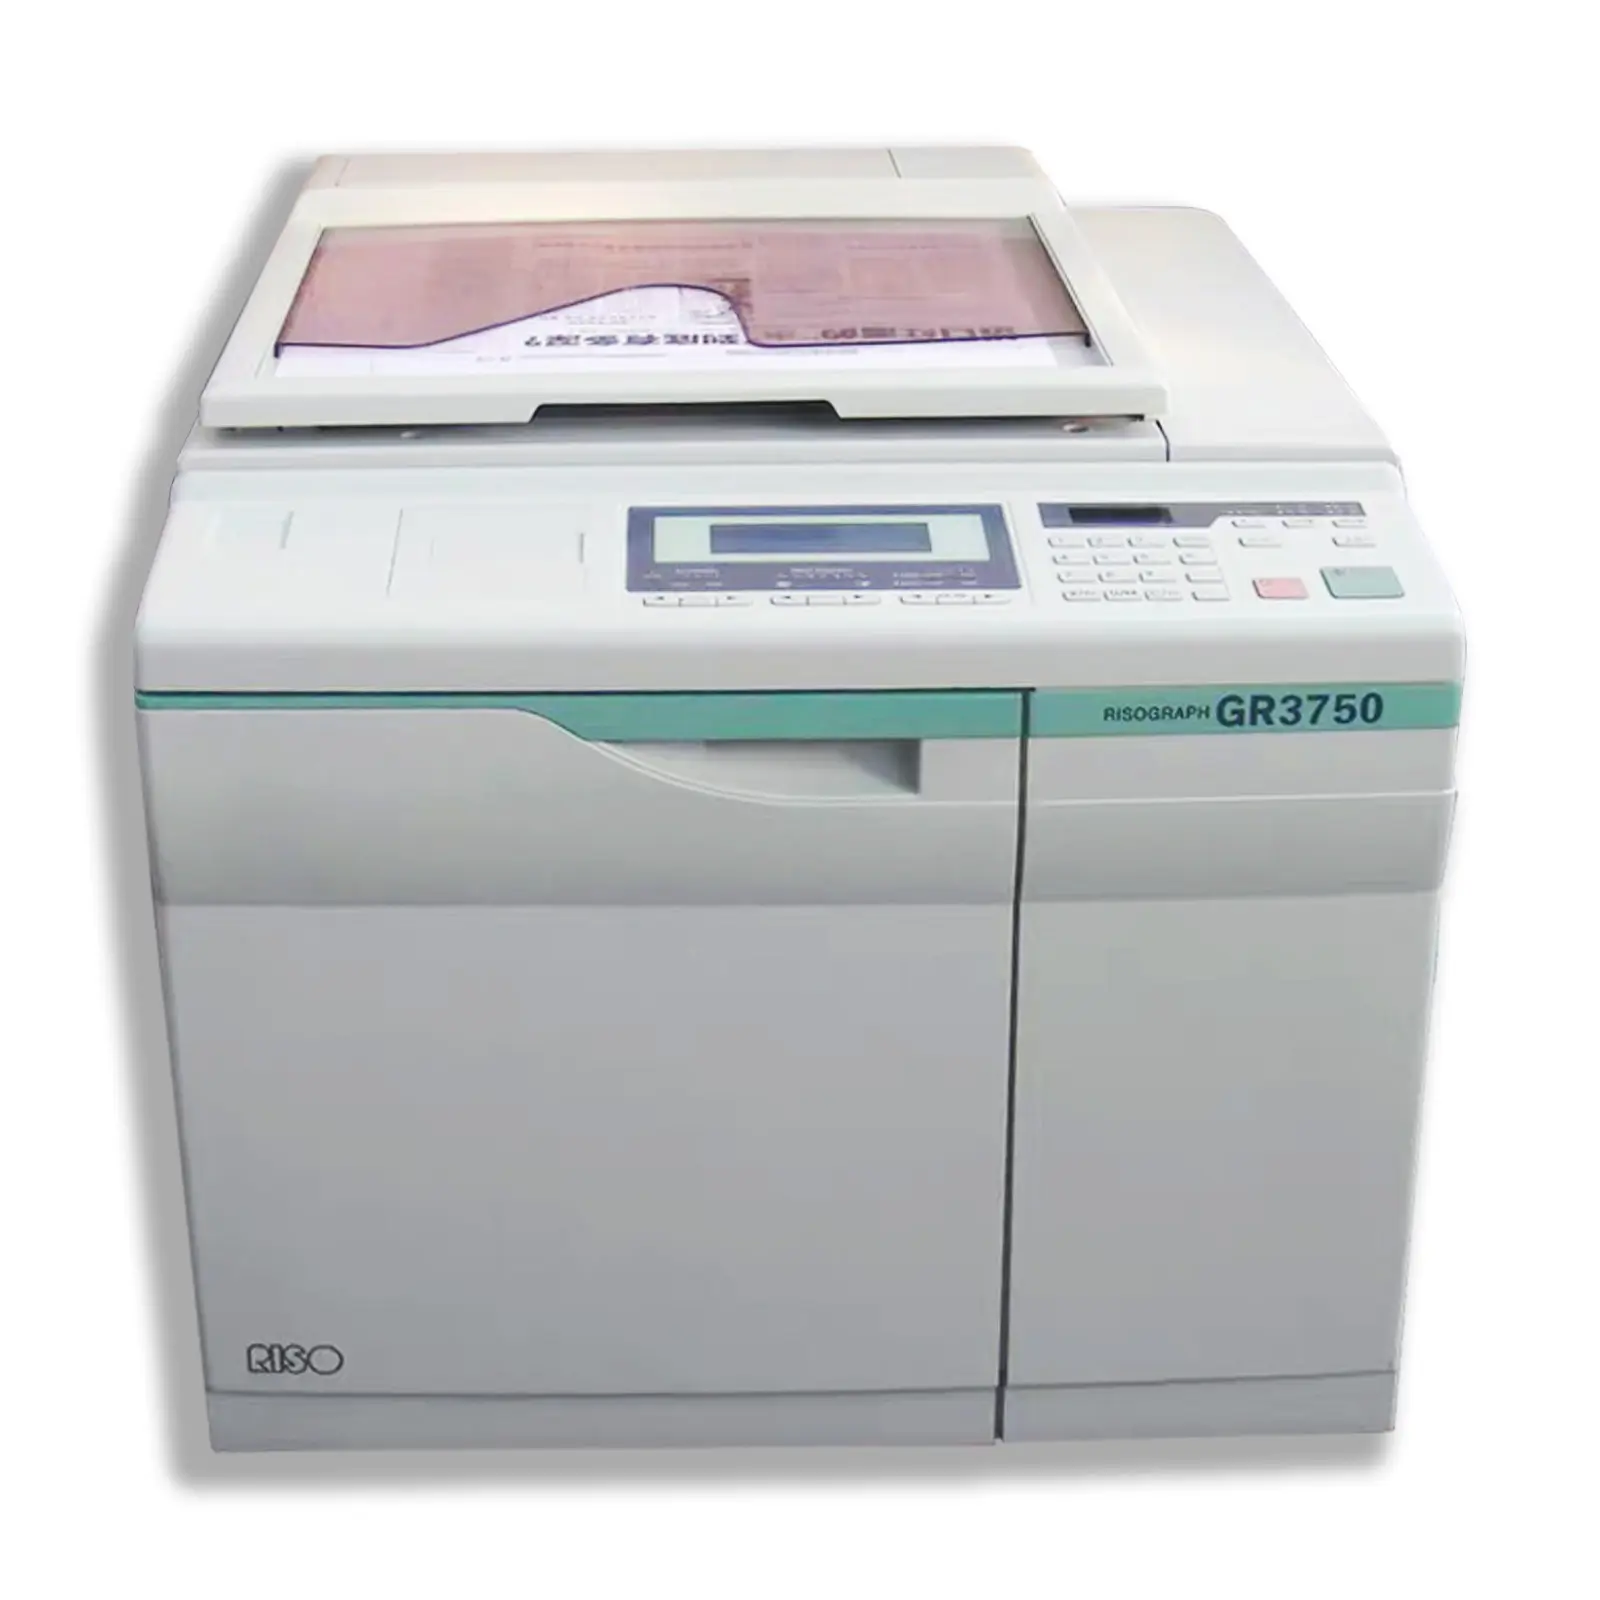 Máquina de impresión reacondicionada de buena calidad 100%, máquina duplicadora Riso de prueba GR2750 GR3750, impresora Riso para copiadora usada